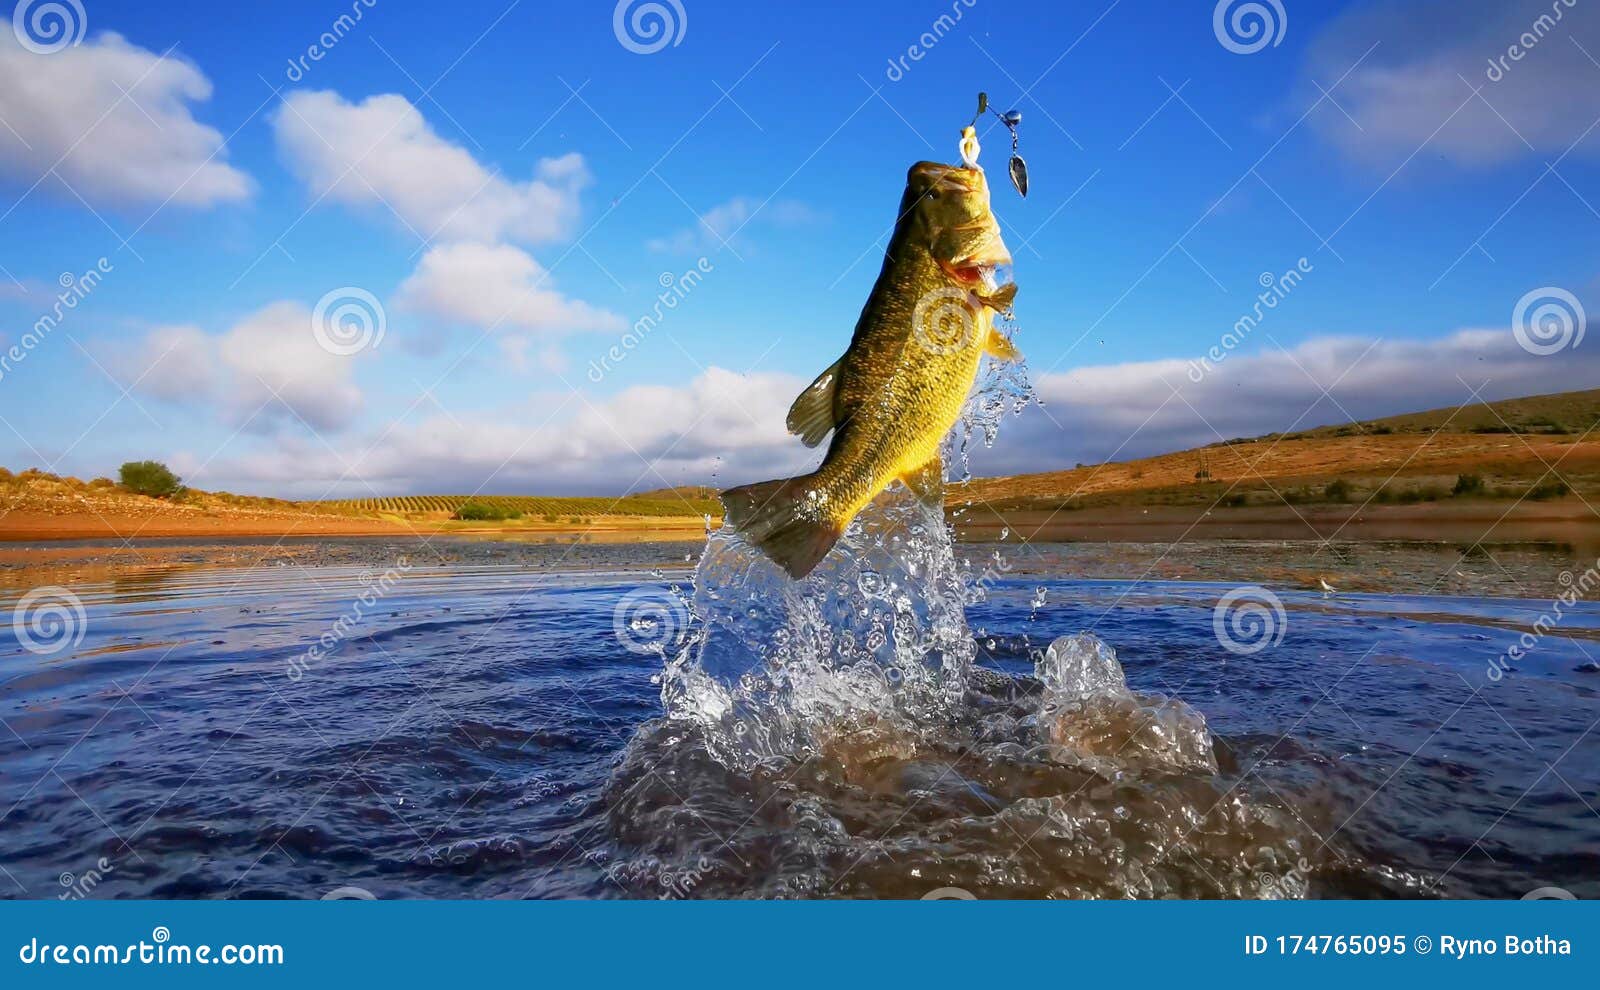 big bass large mouth - fishing